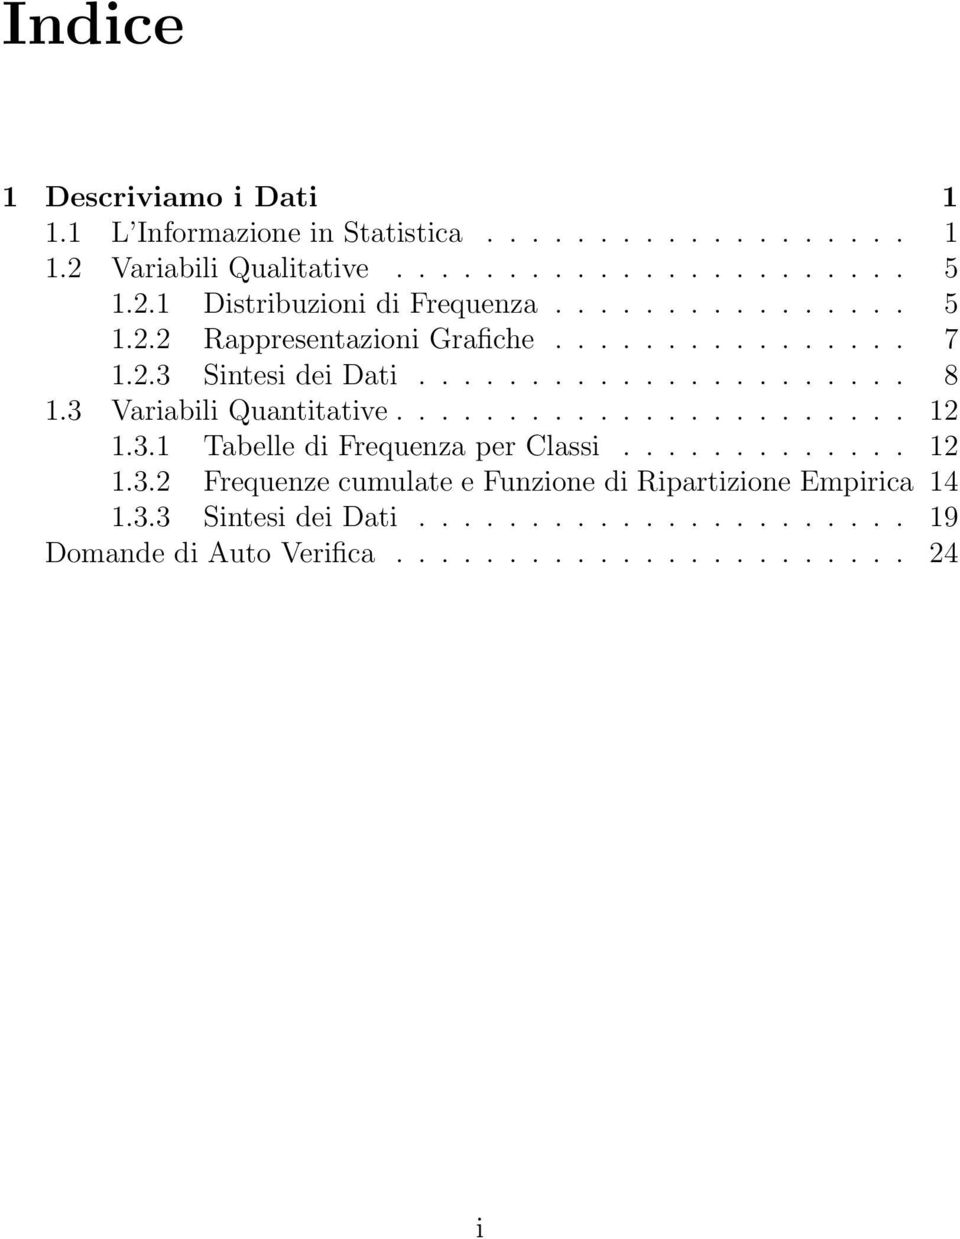 3 Variabili Quantitative....................... 12 1.3.1 Tabelle di Frequenza per Classi............. 12 1.3.2 Frequenze cumulate e Funzione di Ripartizione Empirica 14 1.